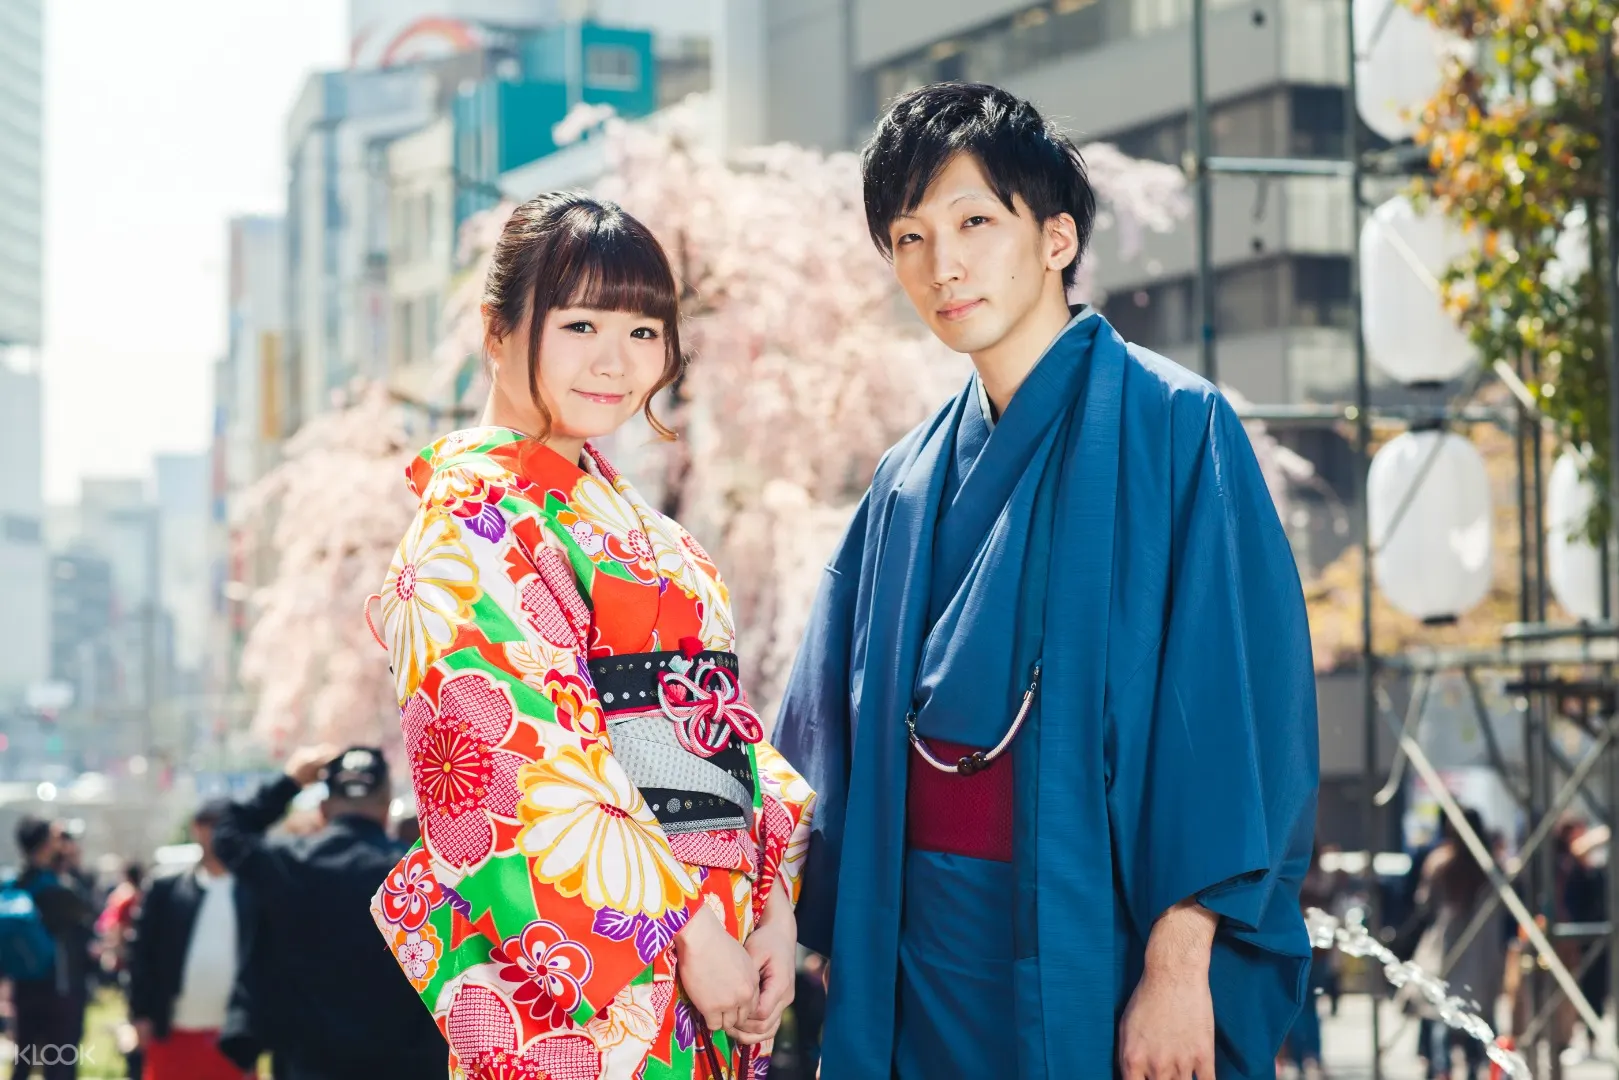 日本京都vasara和服 浴衣体验 Klook客路中国